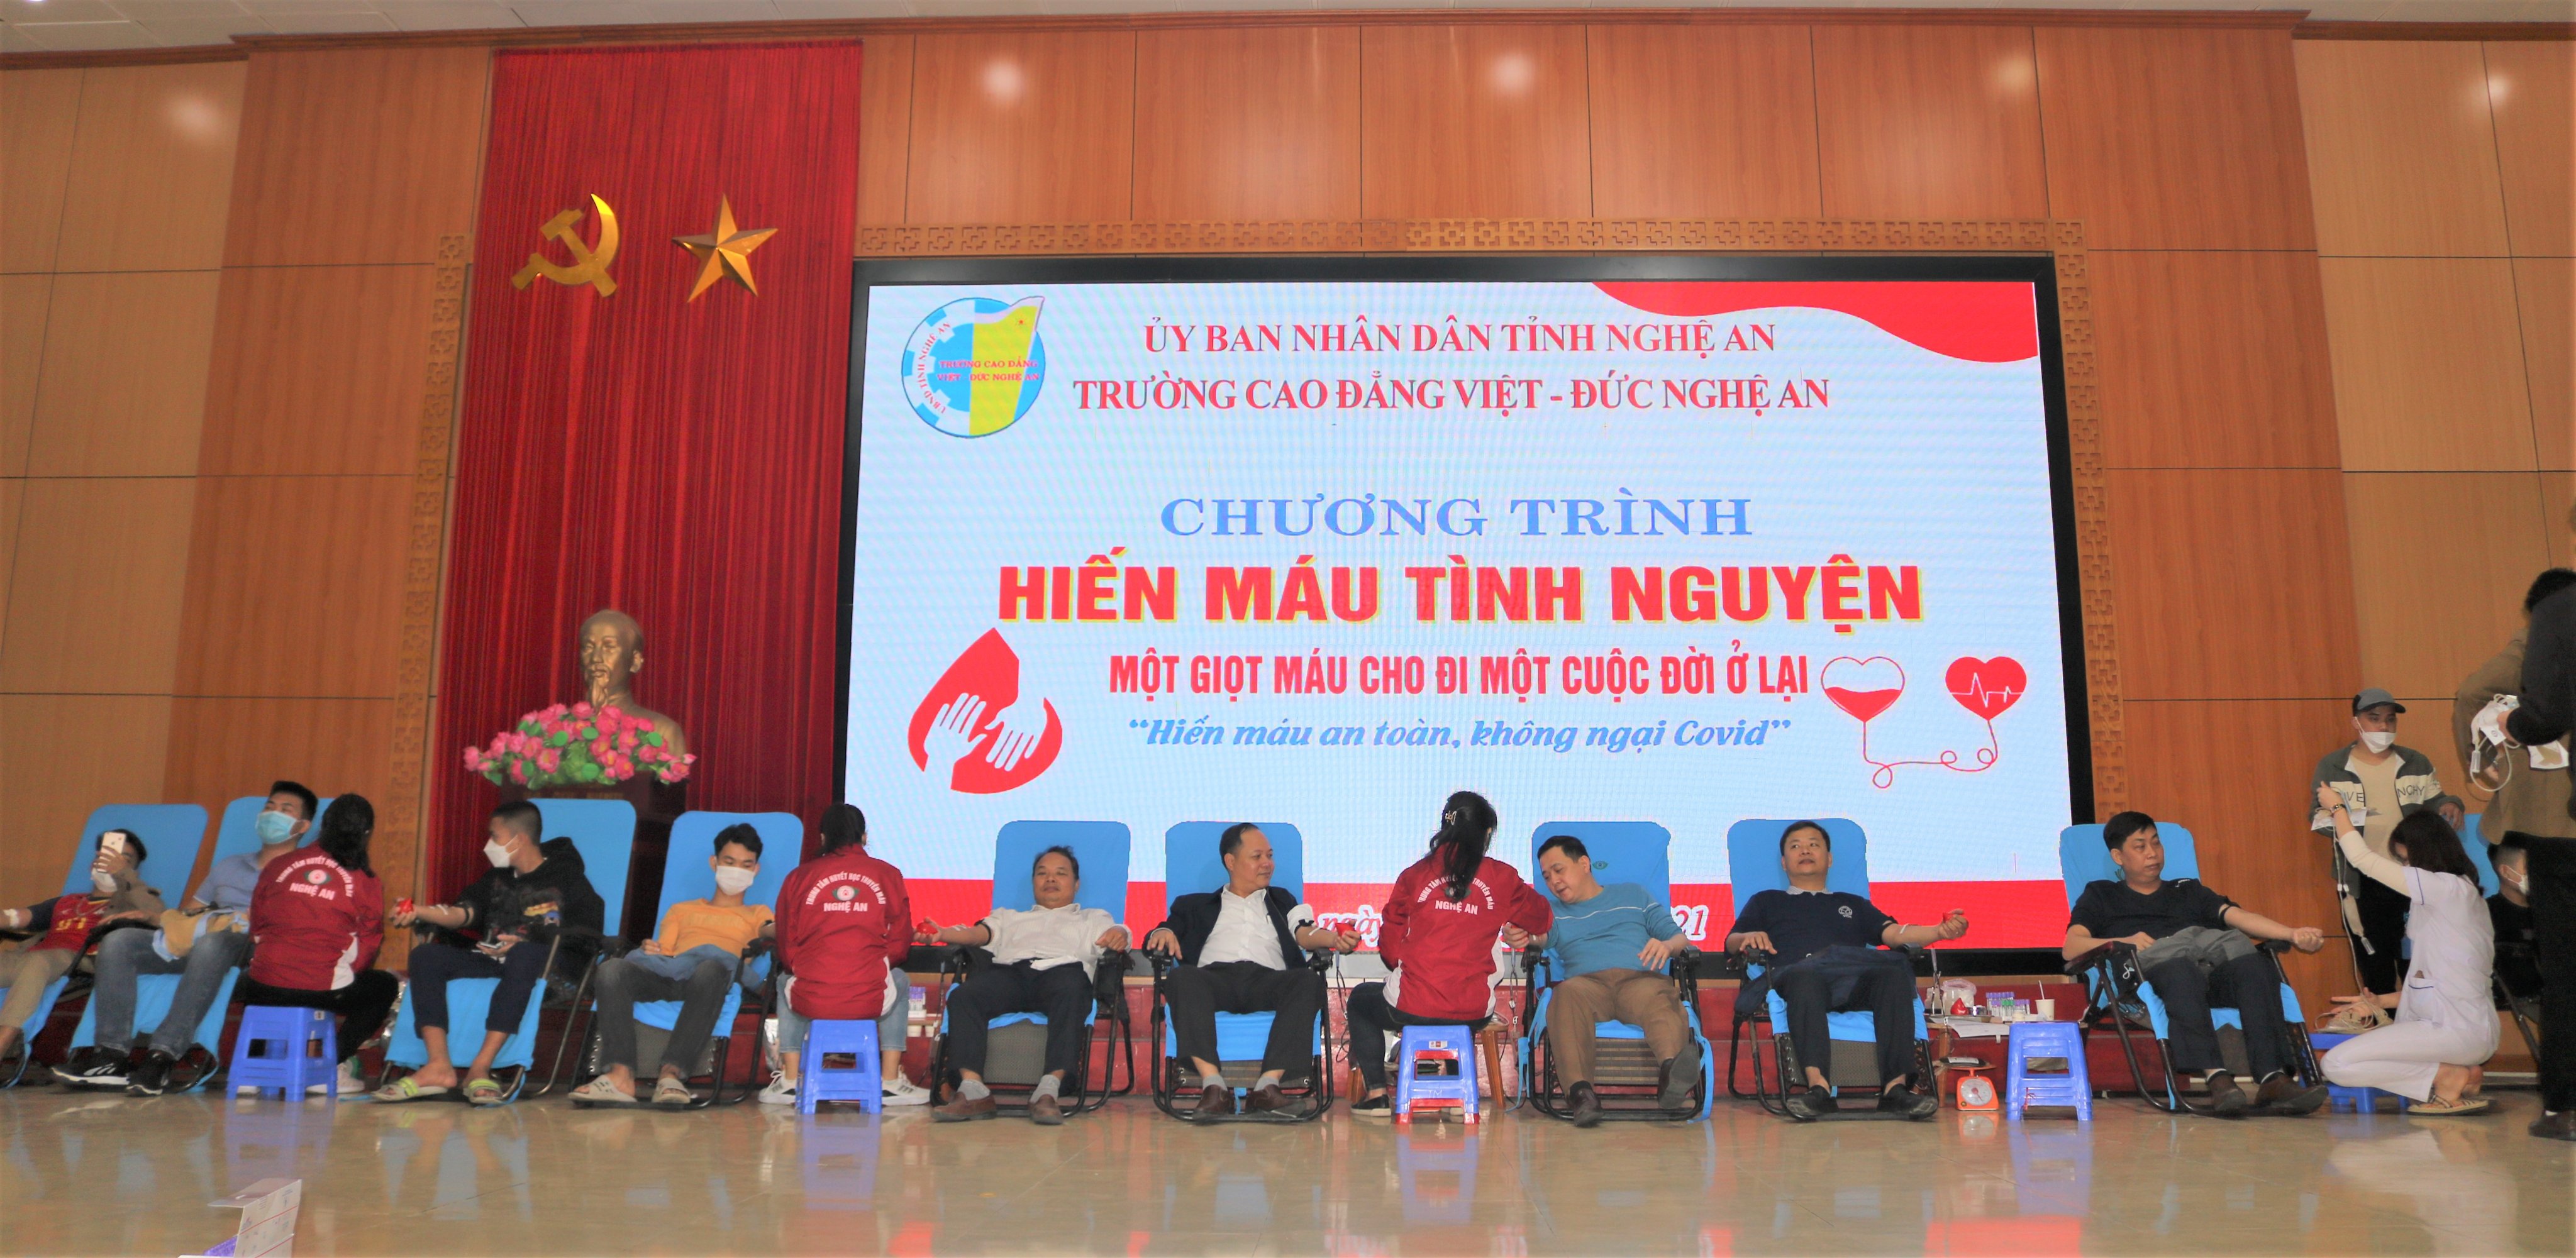  Ngày hội hiến máu nhân đạo – Nghĩa cử cao đẹp của cán bộ, viên chức, người lao động và học sinh, sinh viên Trường Cao đẳng Việt – Đức Nghệ An